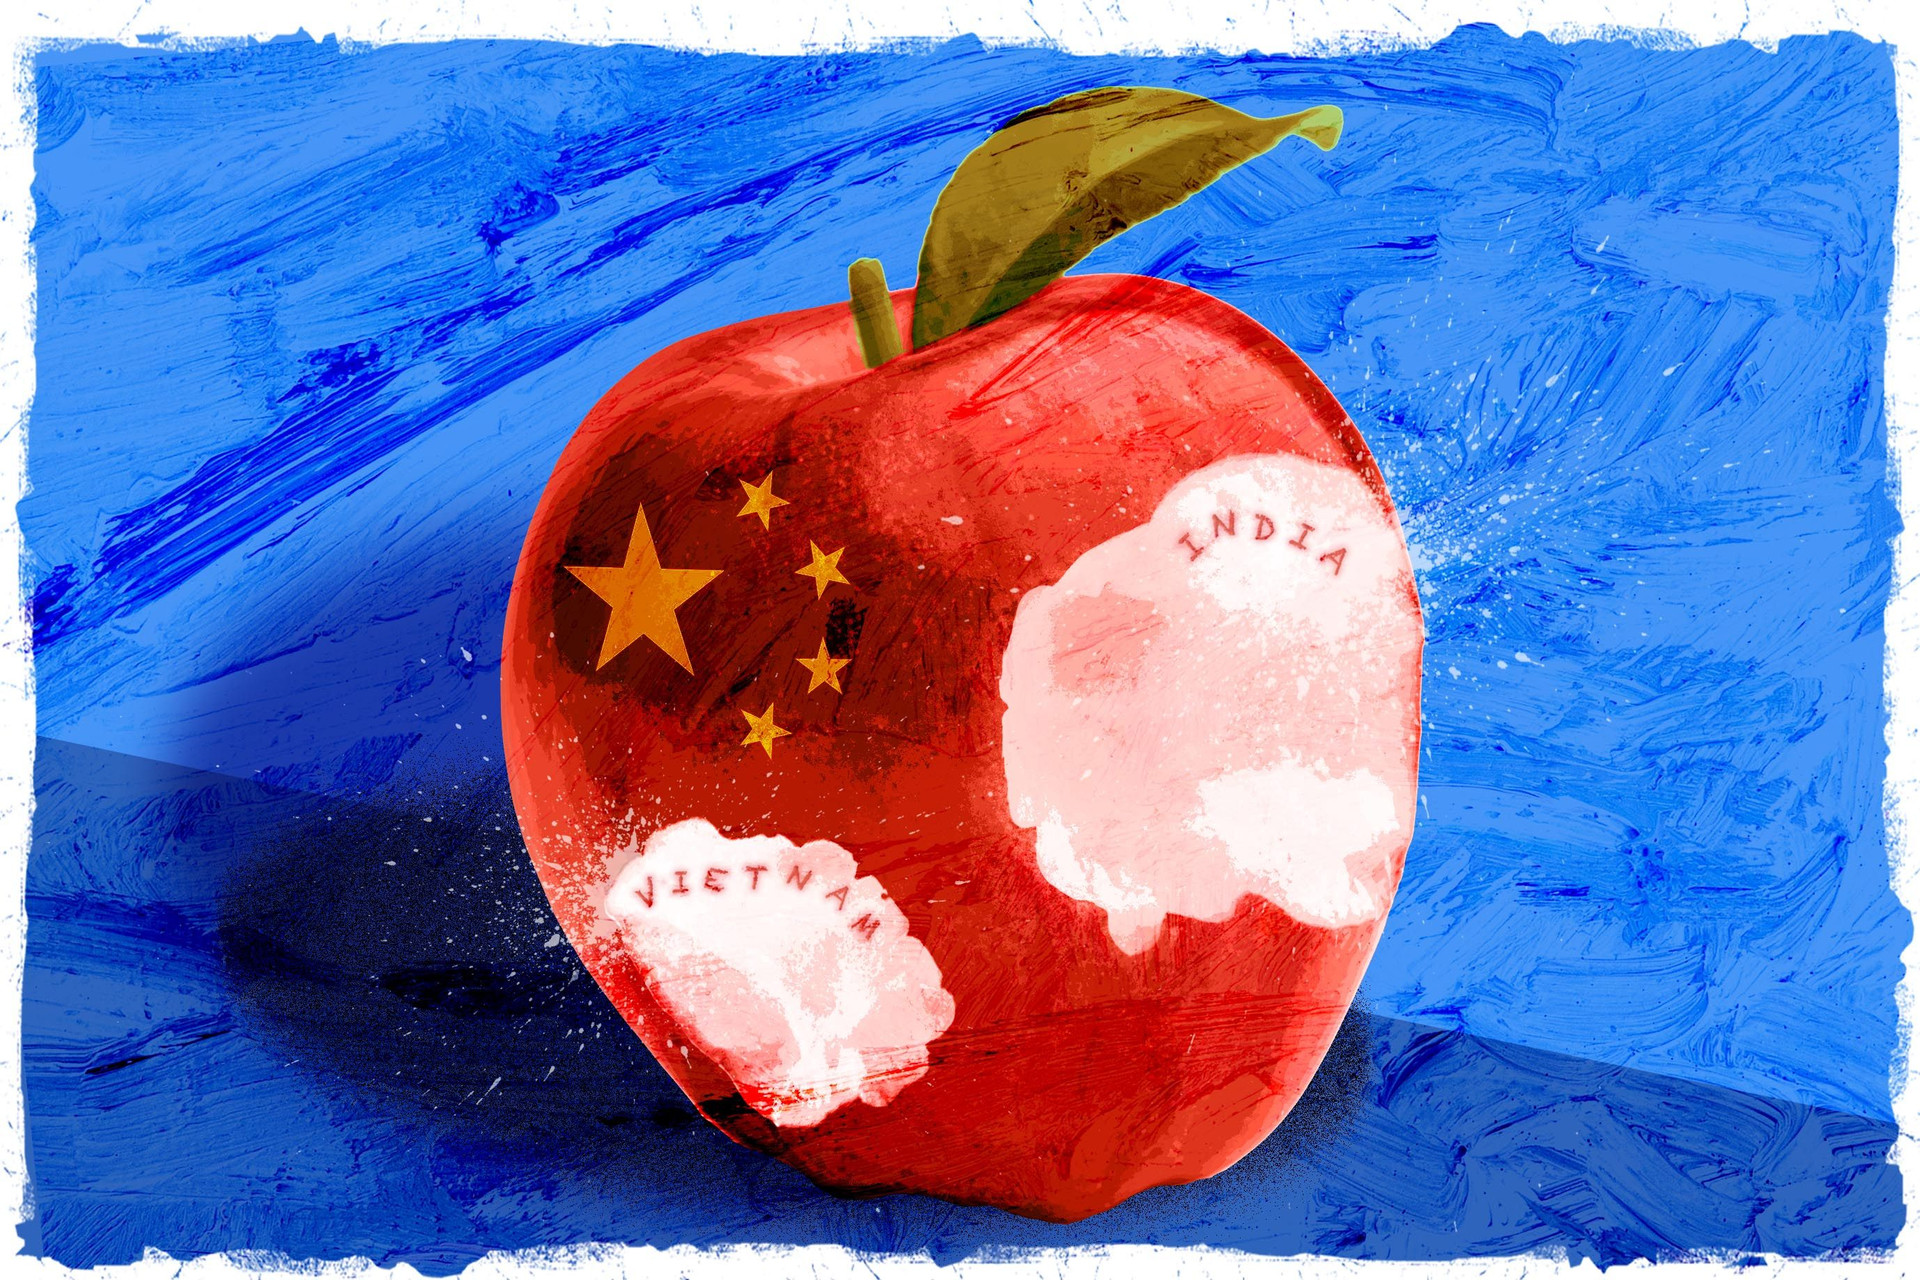 Việt Nam đang sở hữu 'miếng táo' như thế nào trong chuỗi cung ứng toàn cầu của Apple?